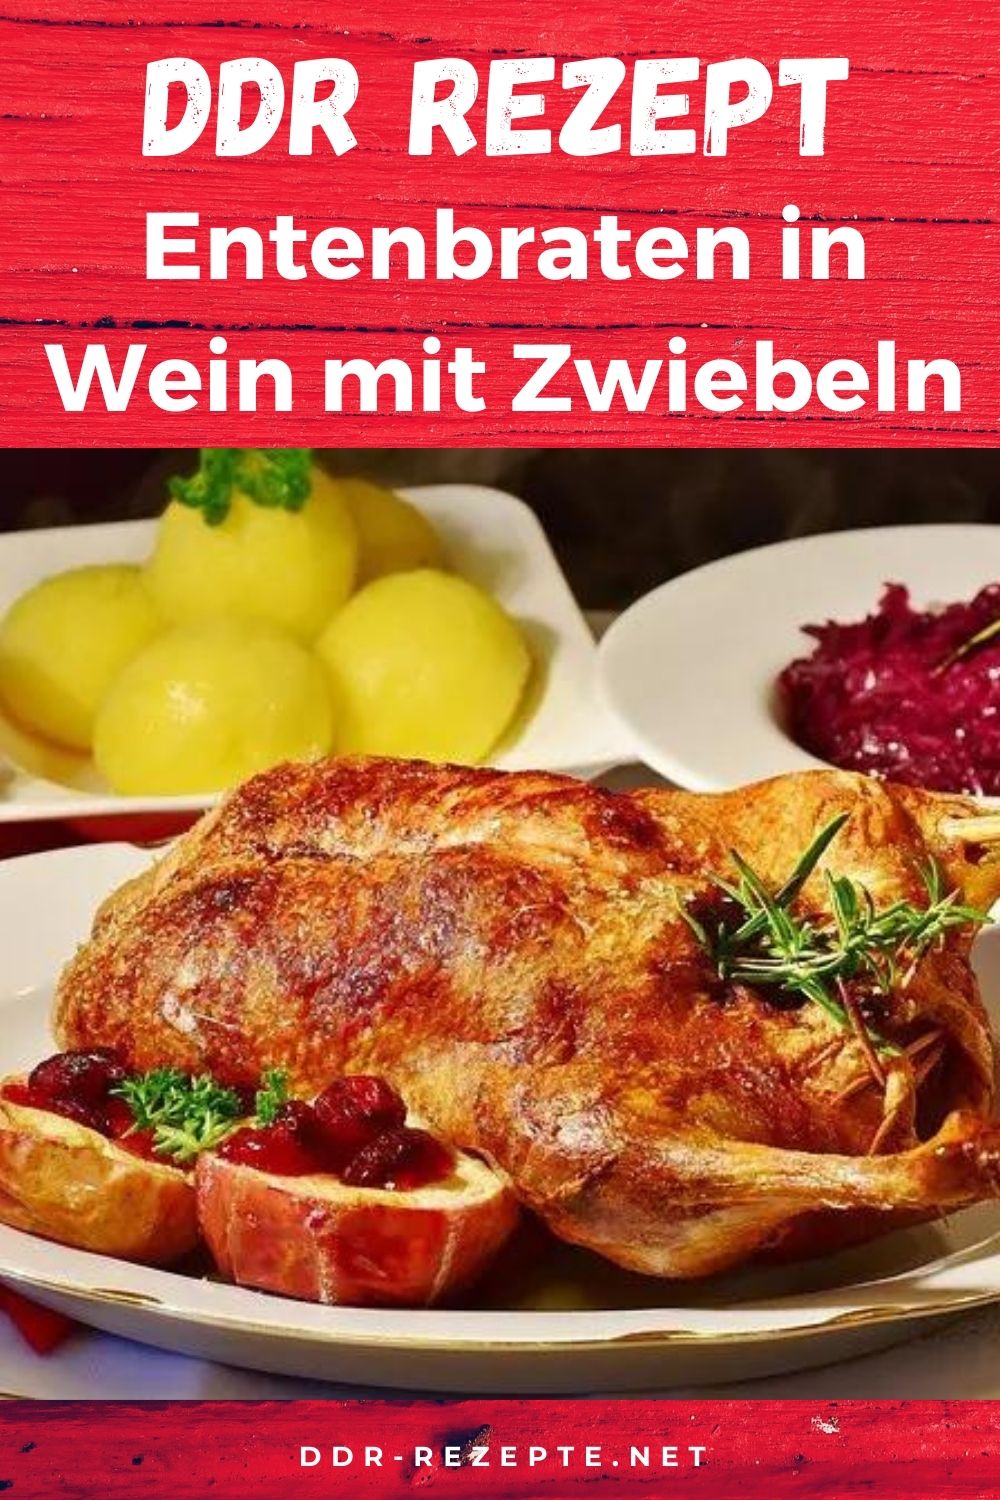 Entenbraten in Wein mit Zwiebeln » DDR-Rezept » einfach &amp; genial!